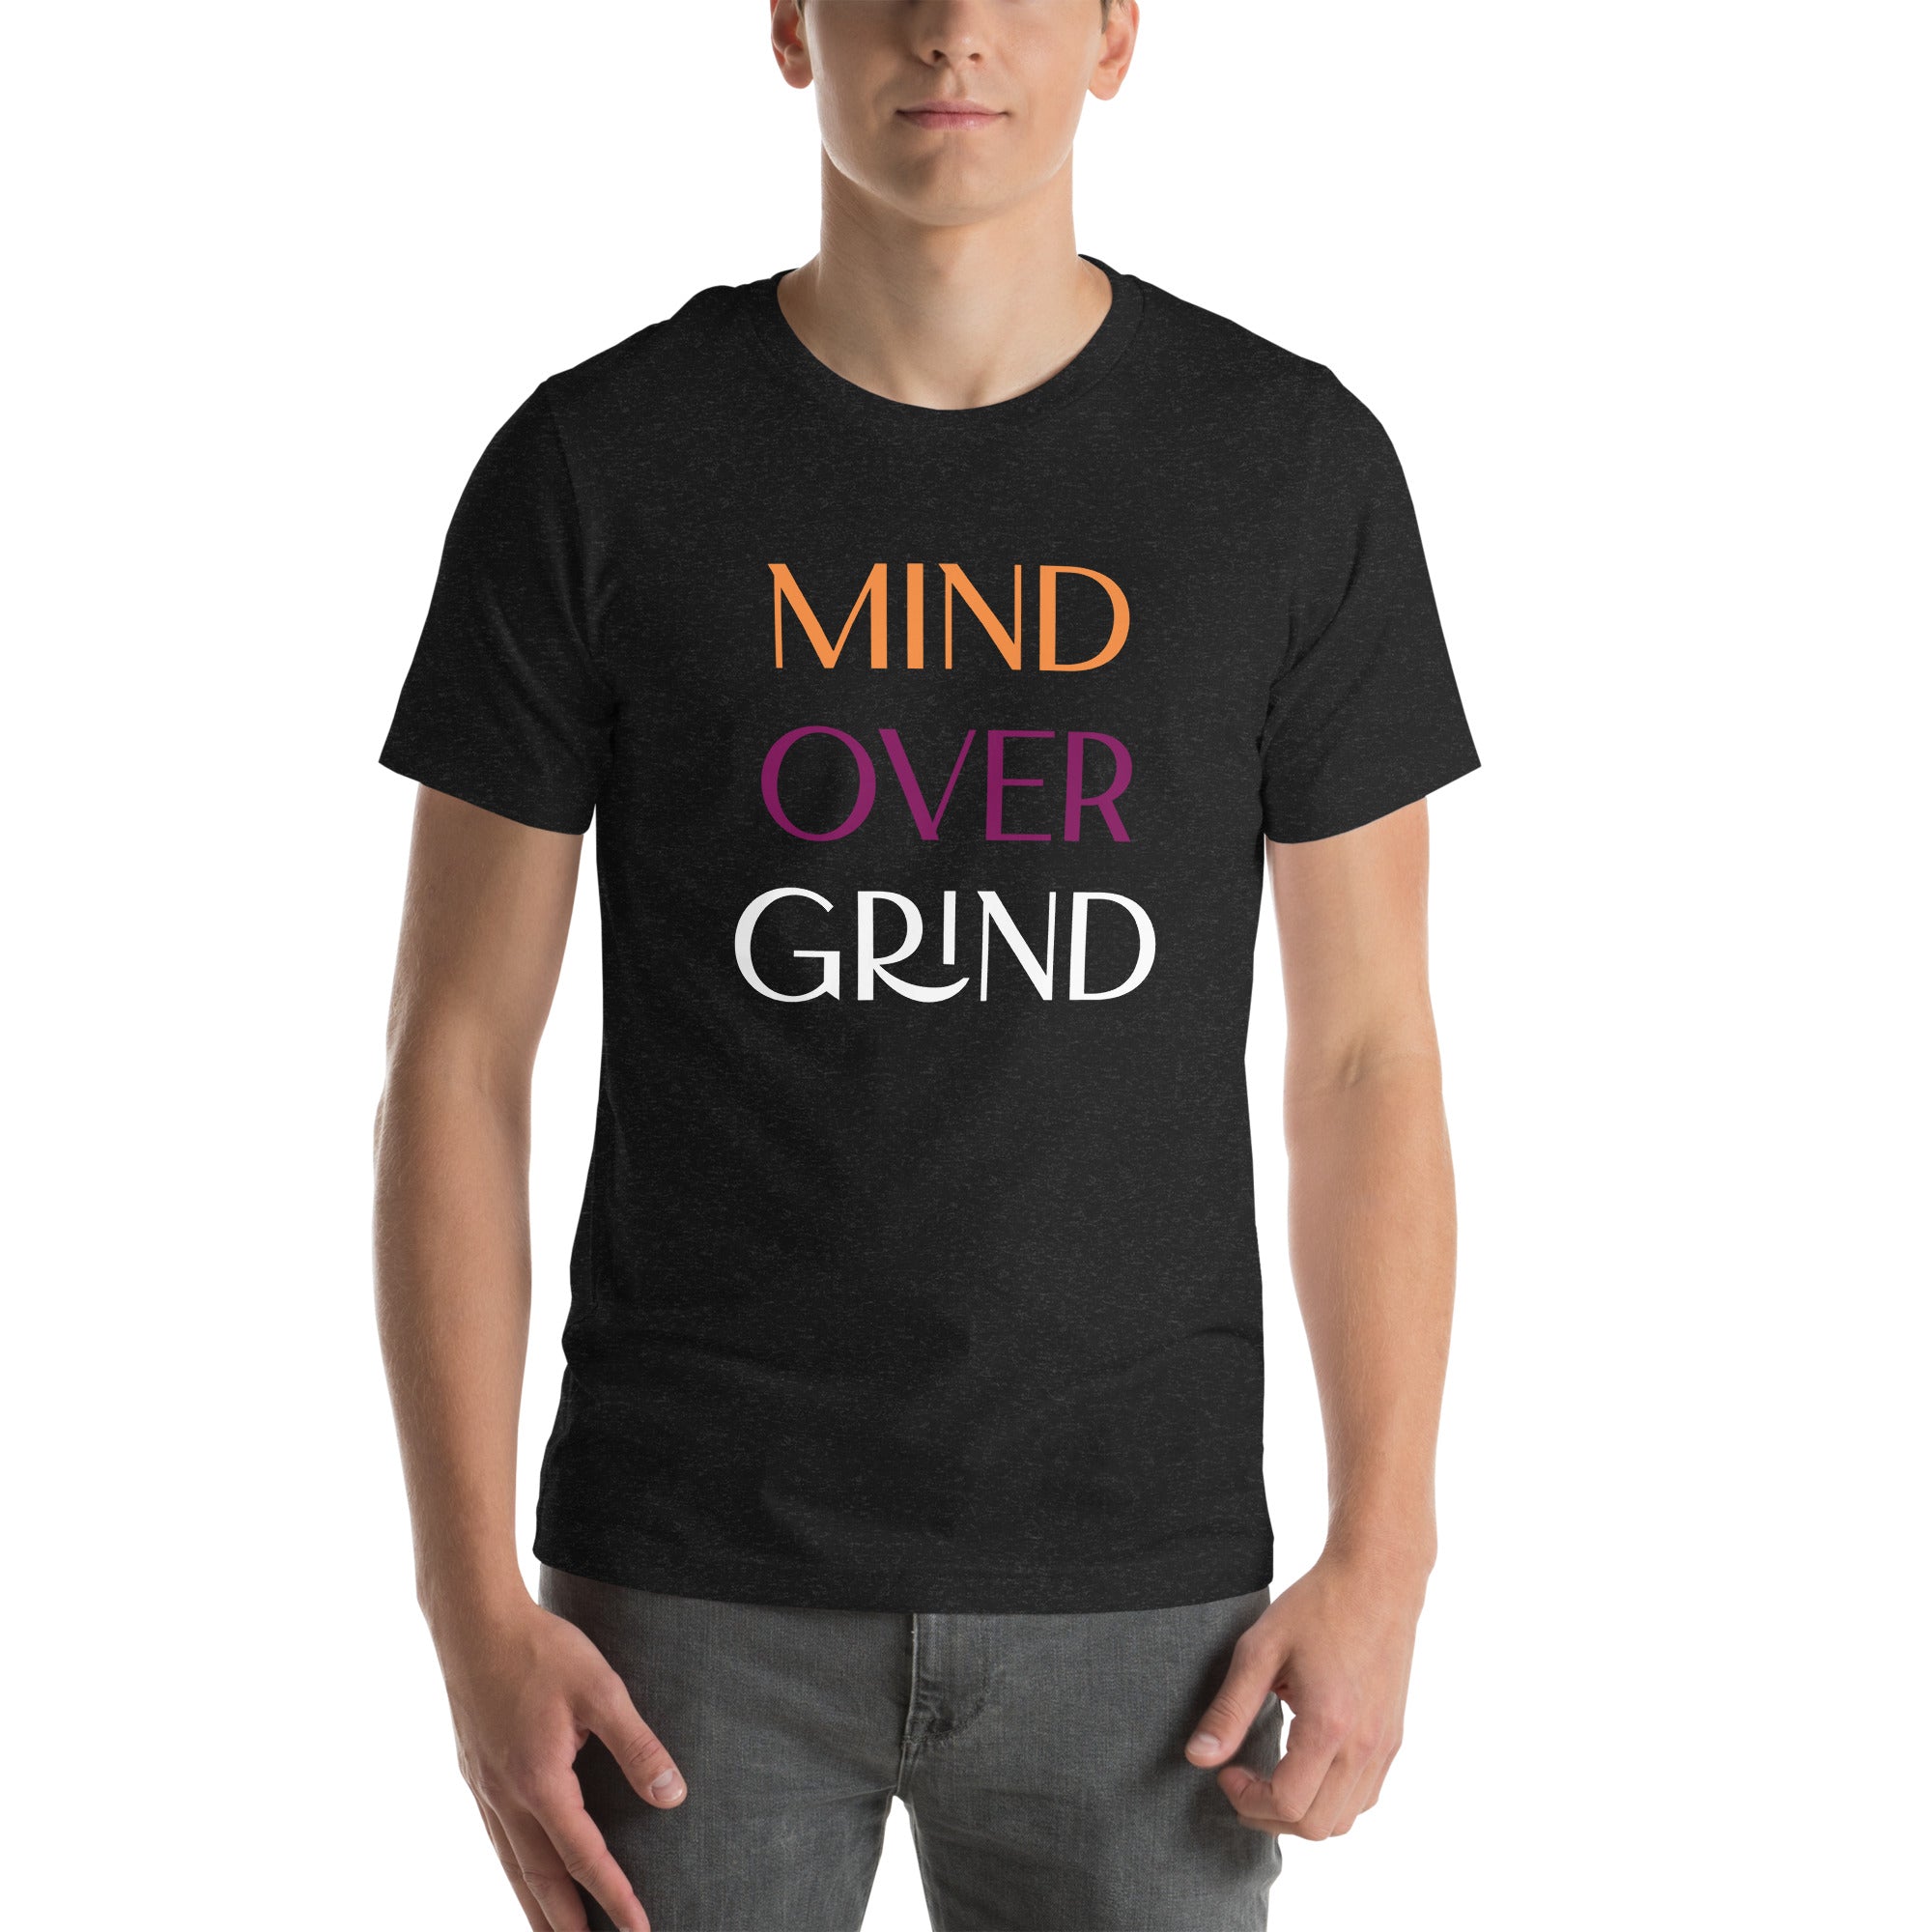 Unisex "Mind Over Grind" Tee